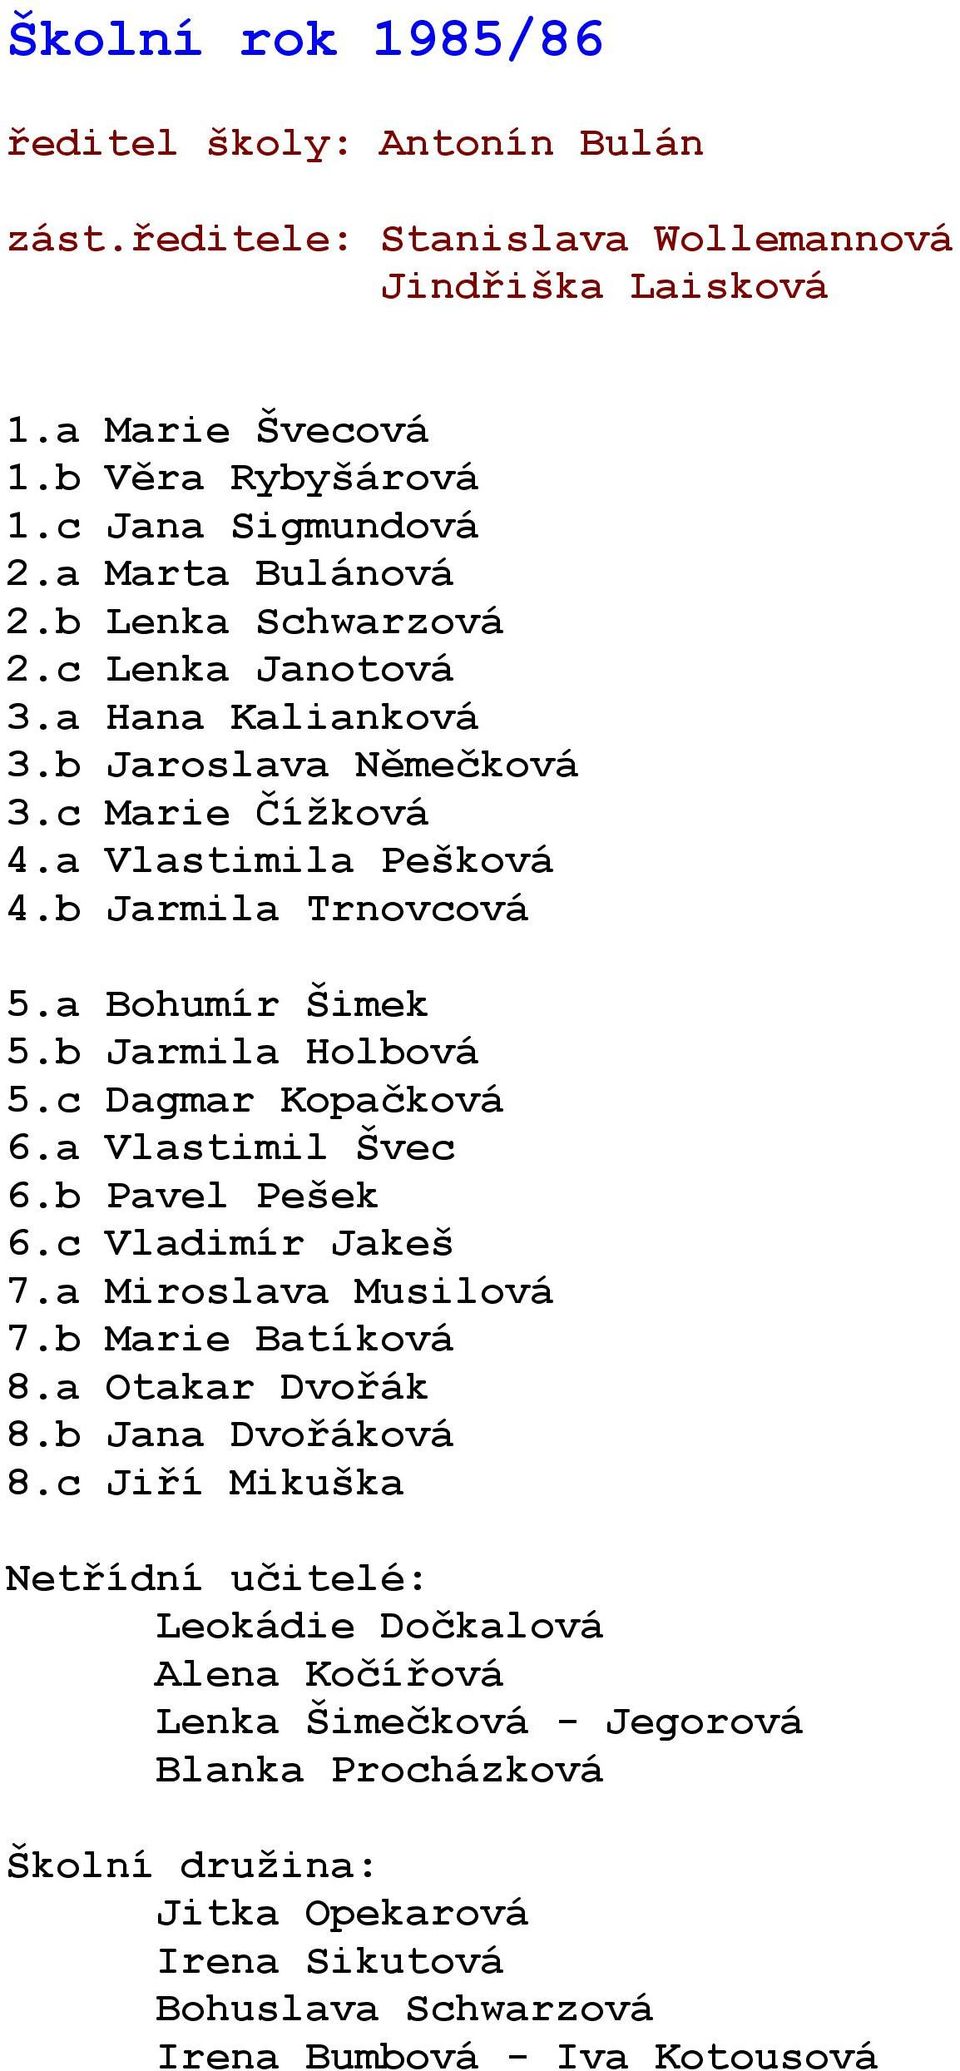 a Vlastimila Pešková 4.b Jarmila Trnovcová 5.a Bohumír Šimek 5.b Jarmila Holbová 5.c Dagmar Kopačková 6.a Vlastimil Švec 6.b Pavel Pešek 6.c Vladimír Jakeš 7.